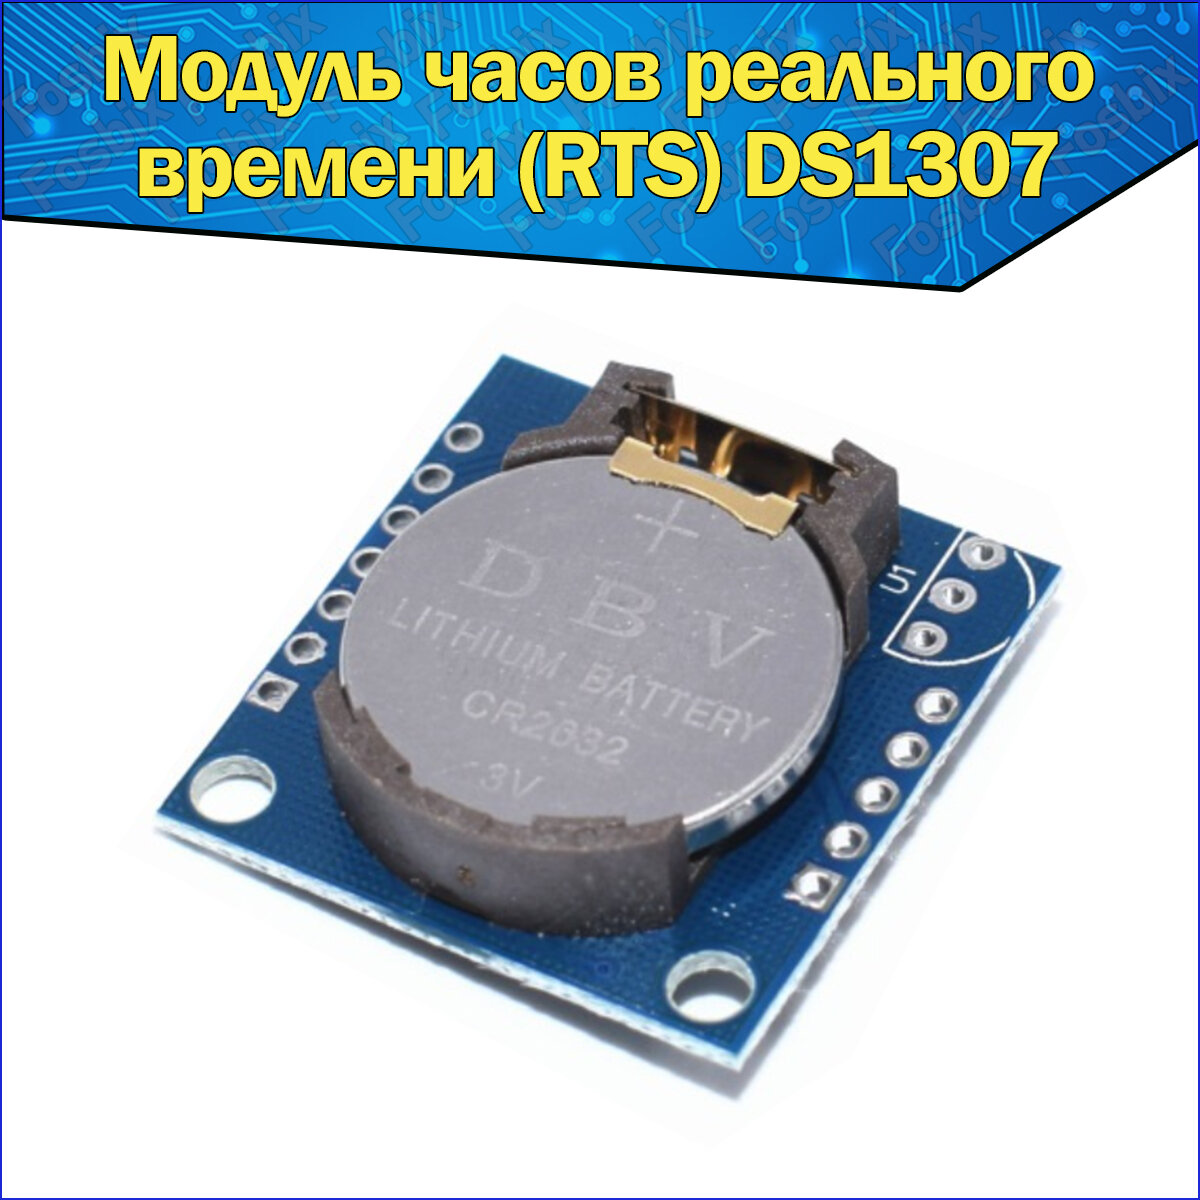 Модуль часов реального времени (RTS) DS1307 Arduino / Ардуино